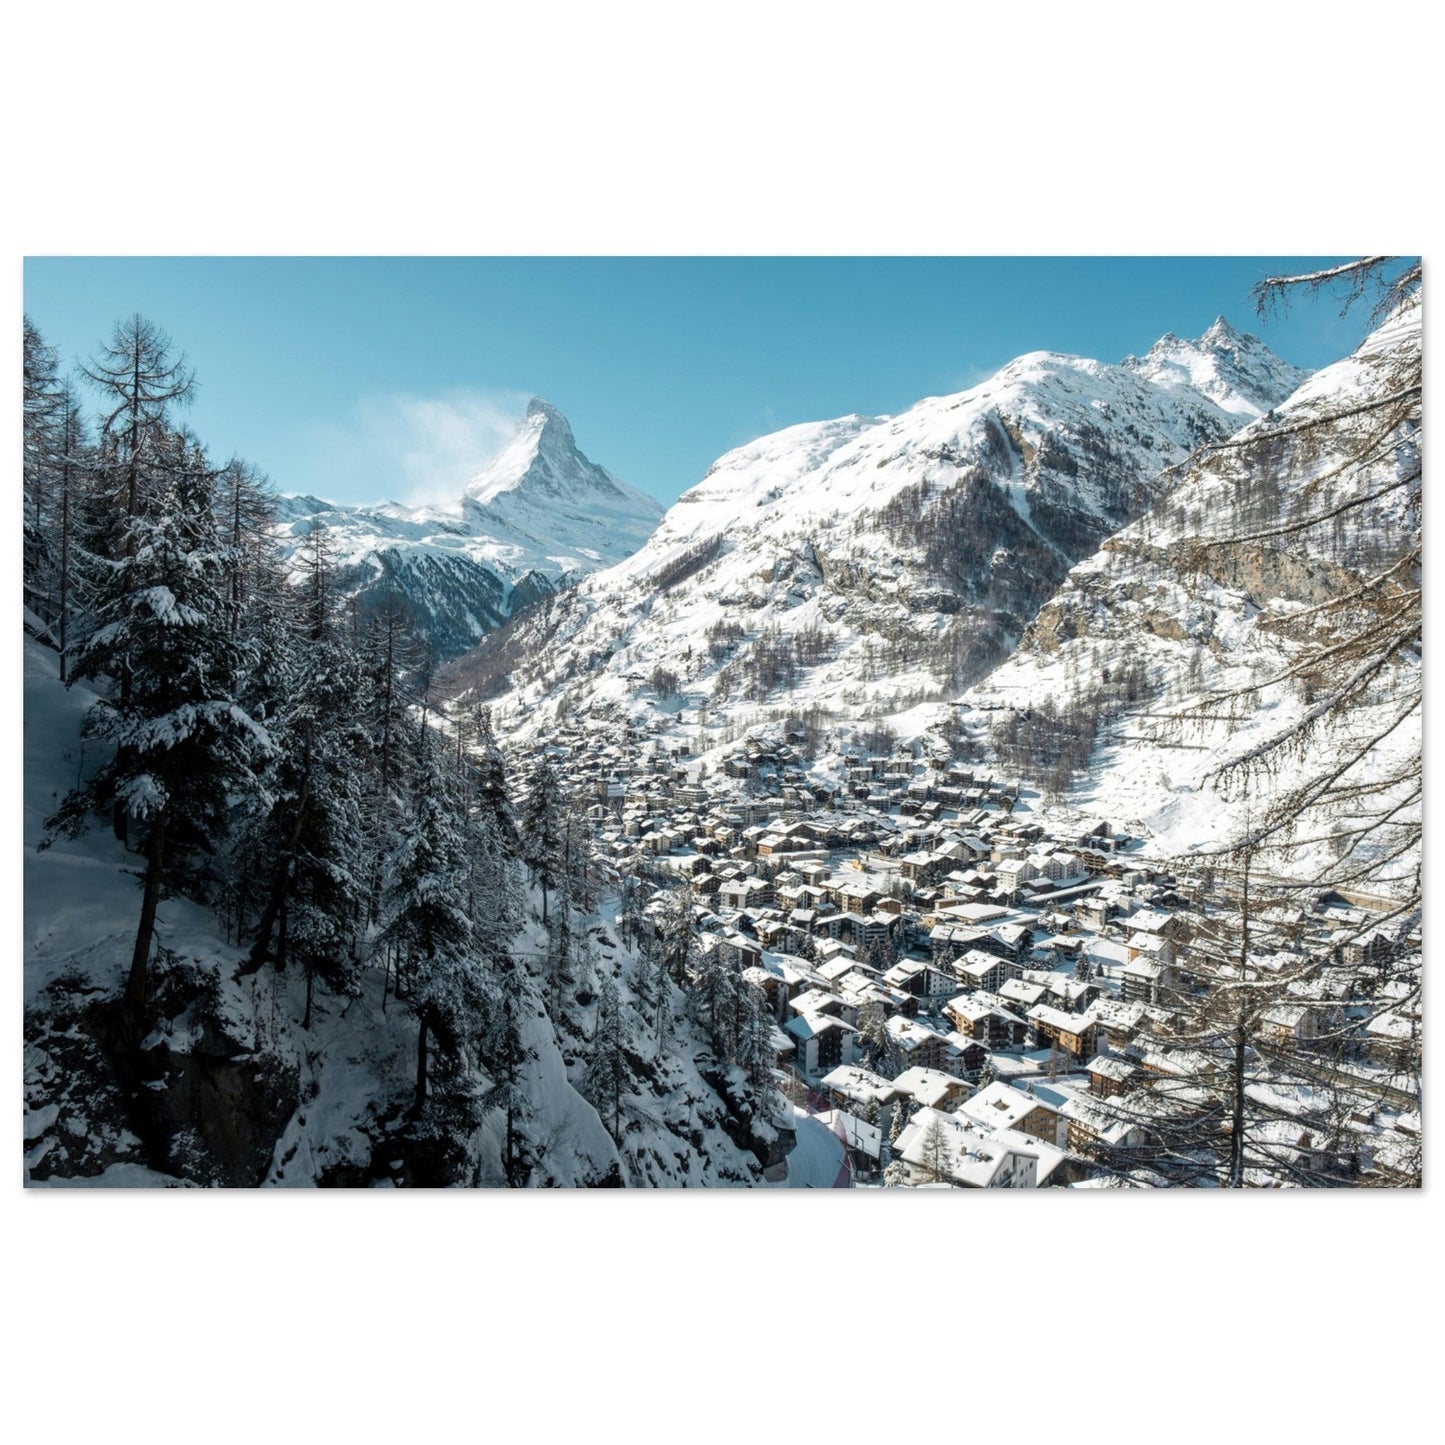 Vente Photo de Zermatt sous la neige, Suisse #2 - Tableau photo alu montagne